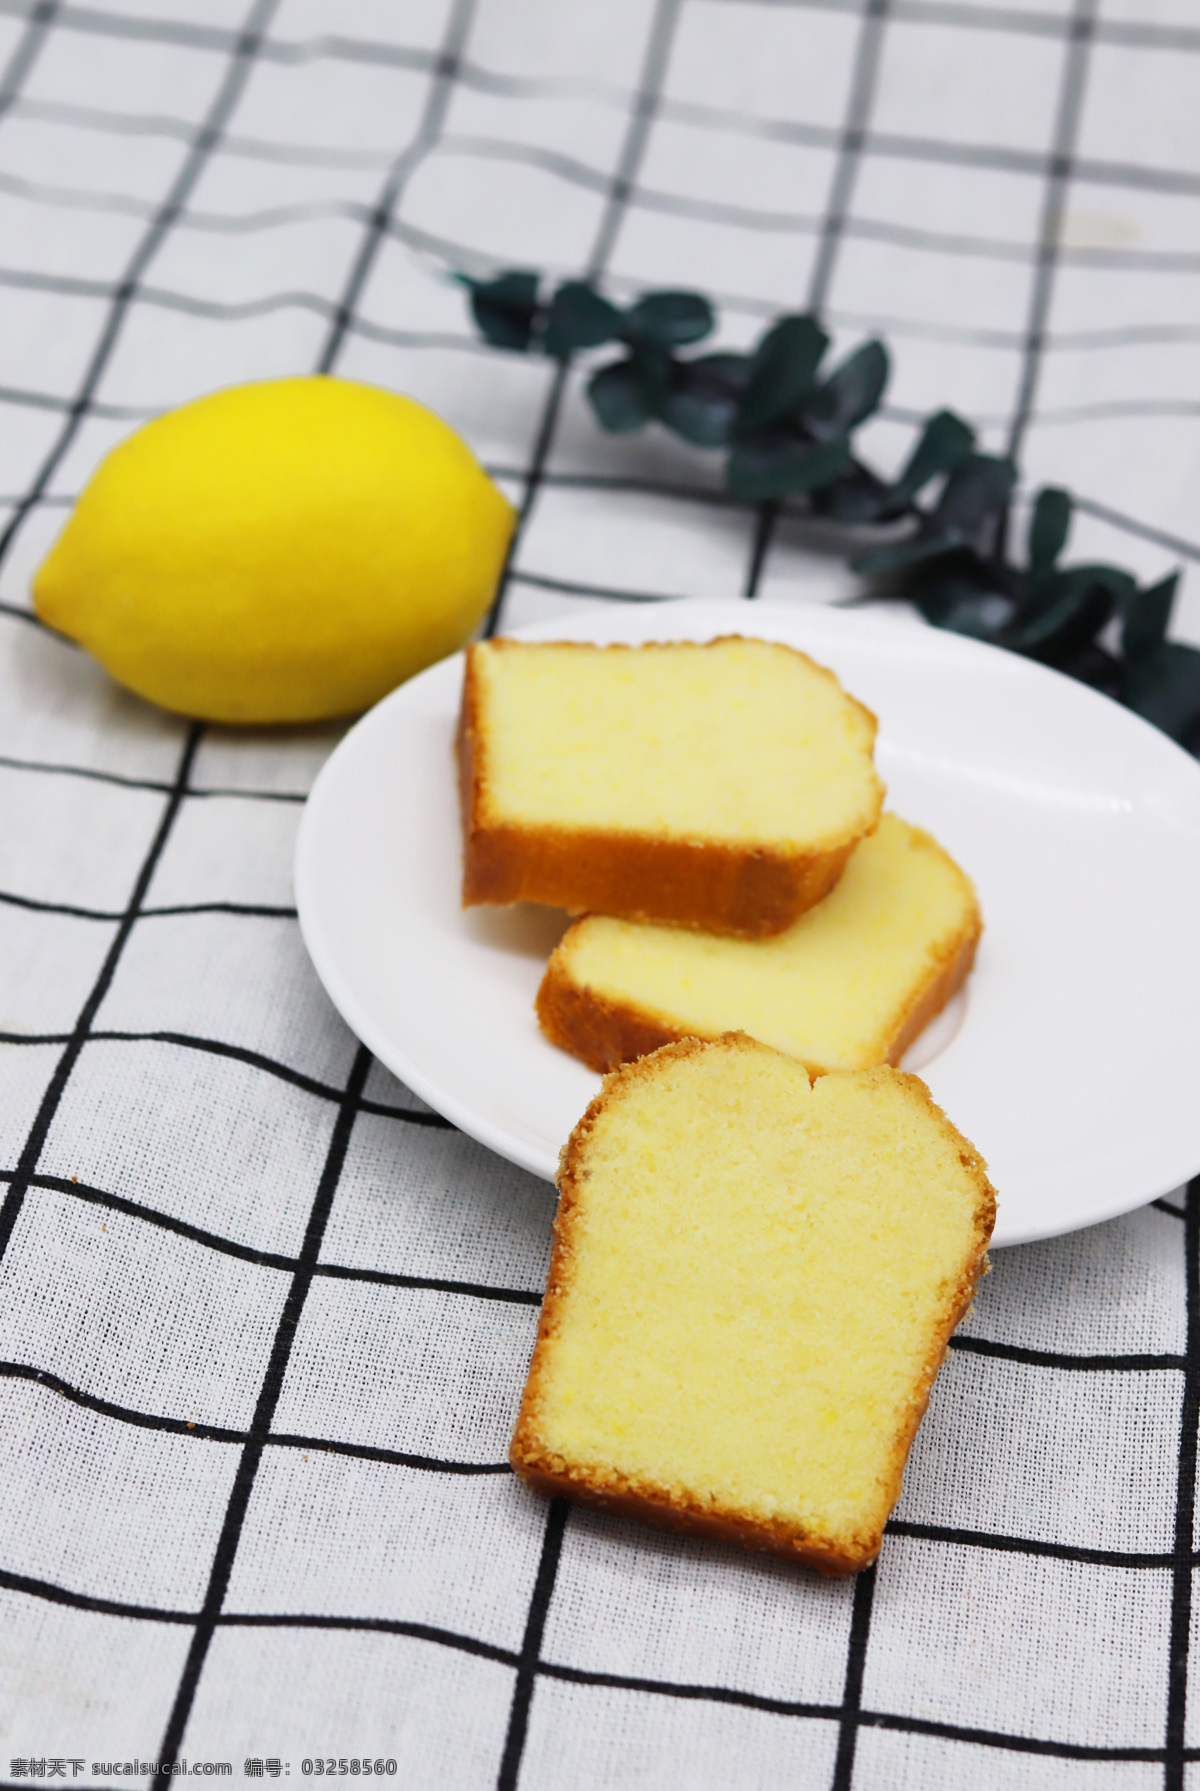 磅蛋糕 马卡龙 蛋糕 杯子蛋糕 烘焙 面包 奶油蛋糕 西点 小点心 盘子 艺术 裱花 水果蛋糕 提拉米苏 食品 餐饮美食 西餐美食